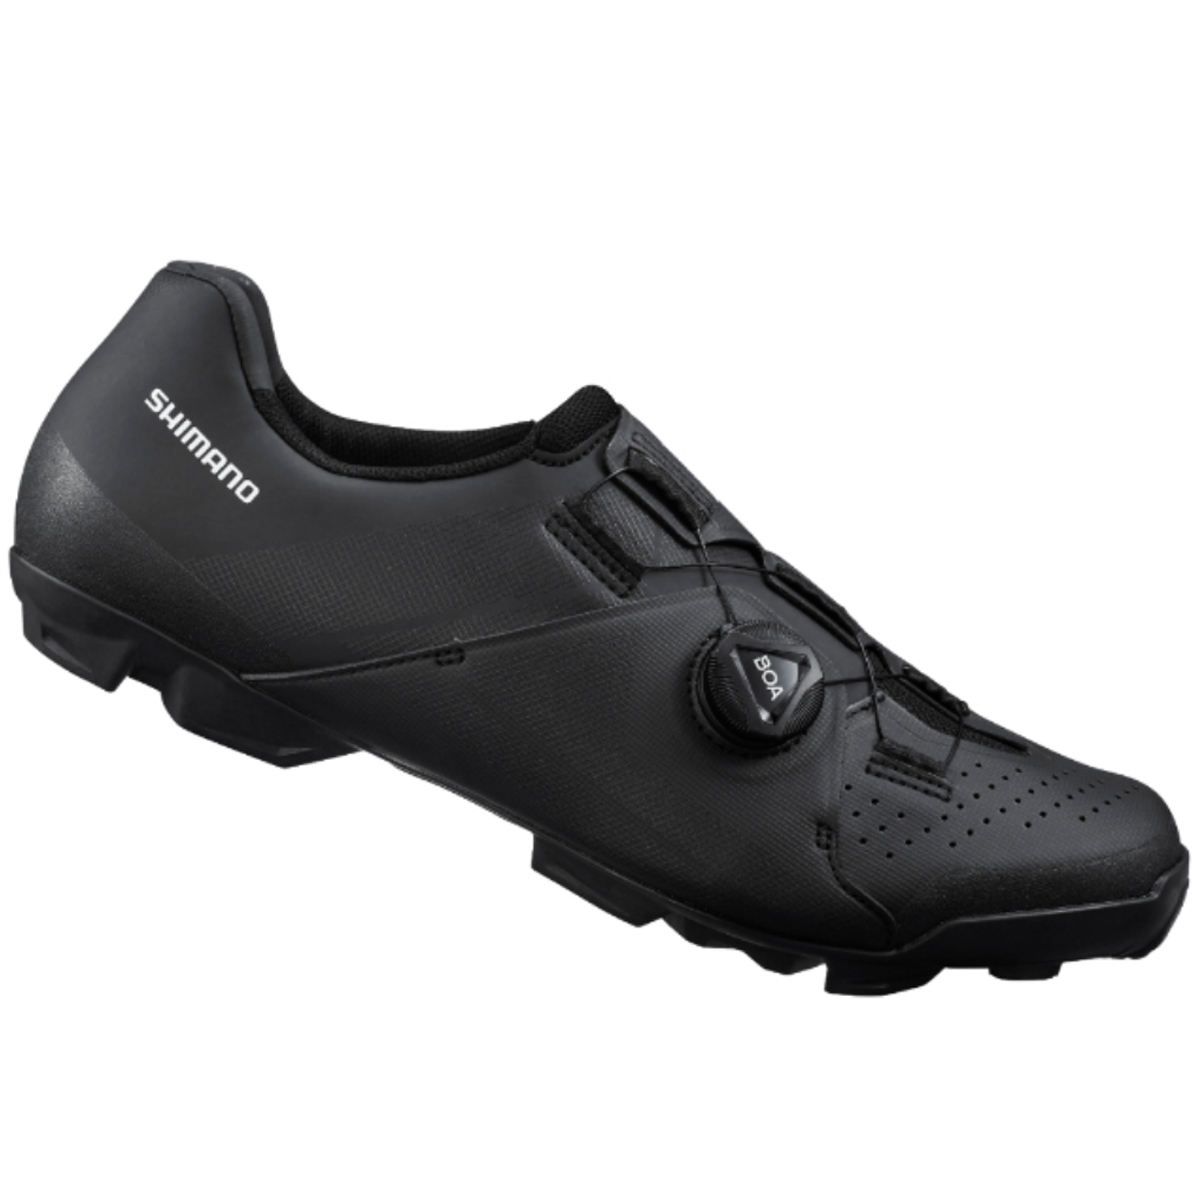 scarpe mtb gr901 nero/blu 2020 SHIMANO scarpe bici 